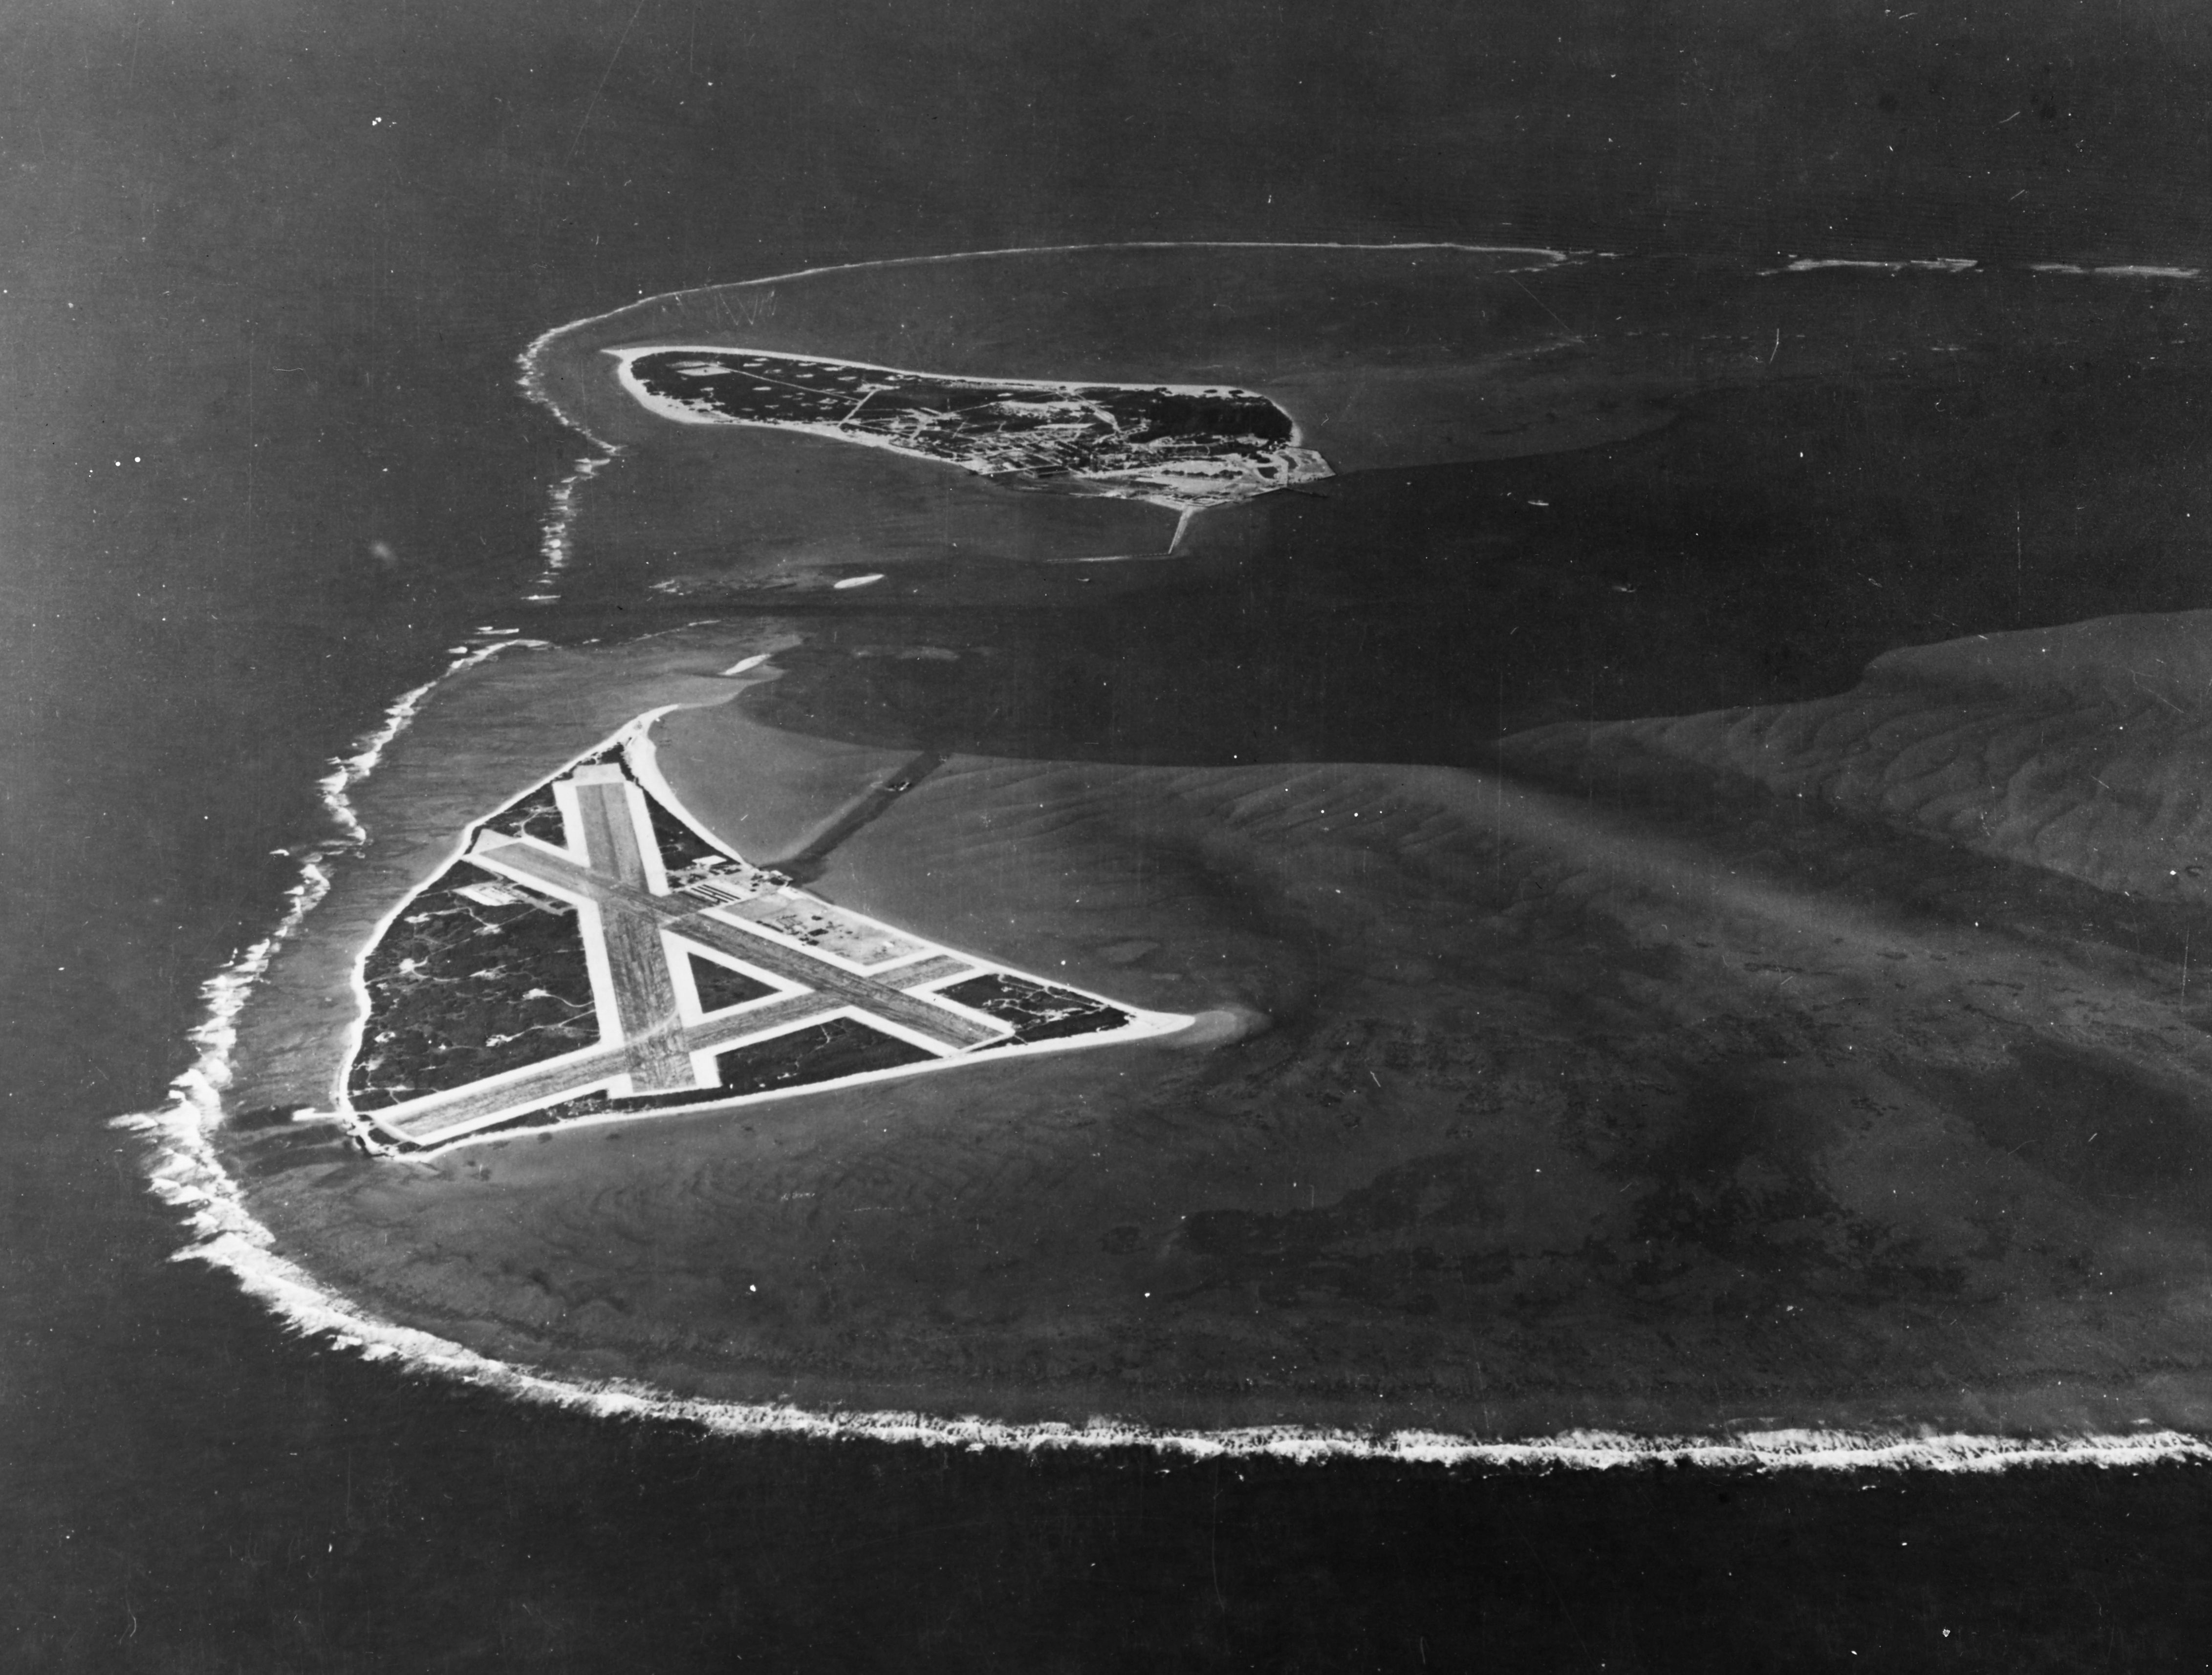 Bitwa o Midway: klęska „niezwyciężonych” | Portal historyczny Histmag.org -  historia dla każdego!